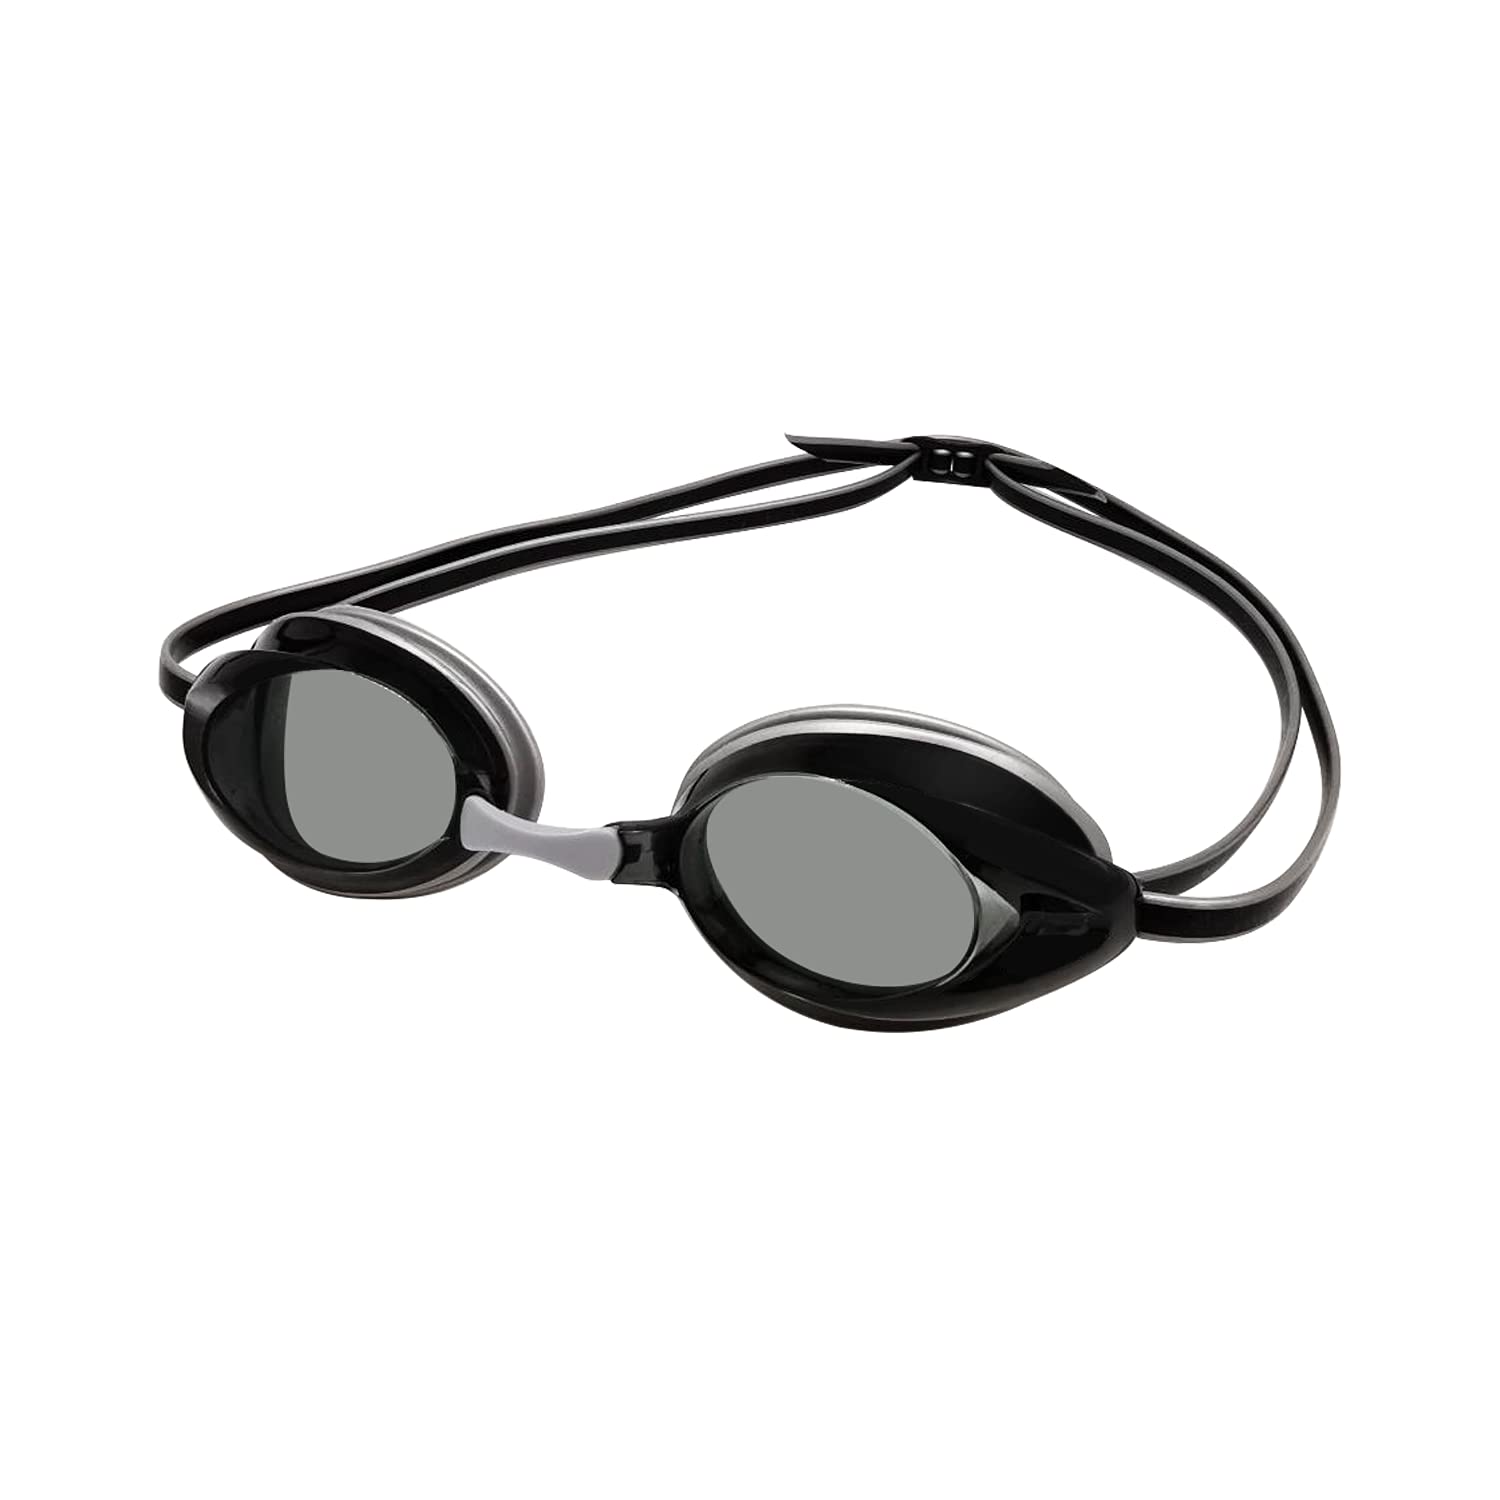 Amazon Basics Unisex-Adult Swim Goggles Silver Coloured